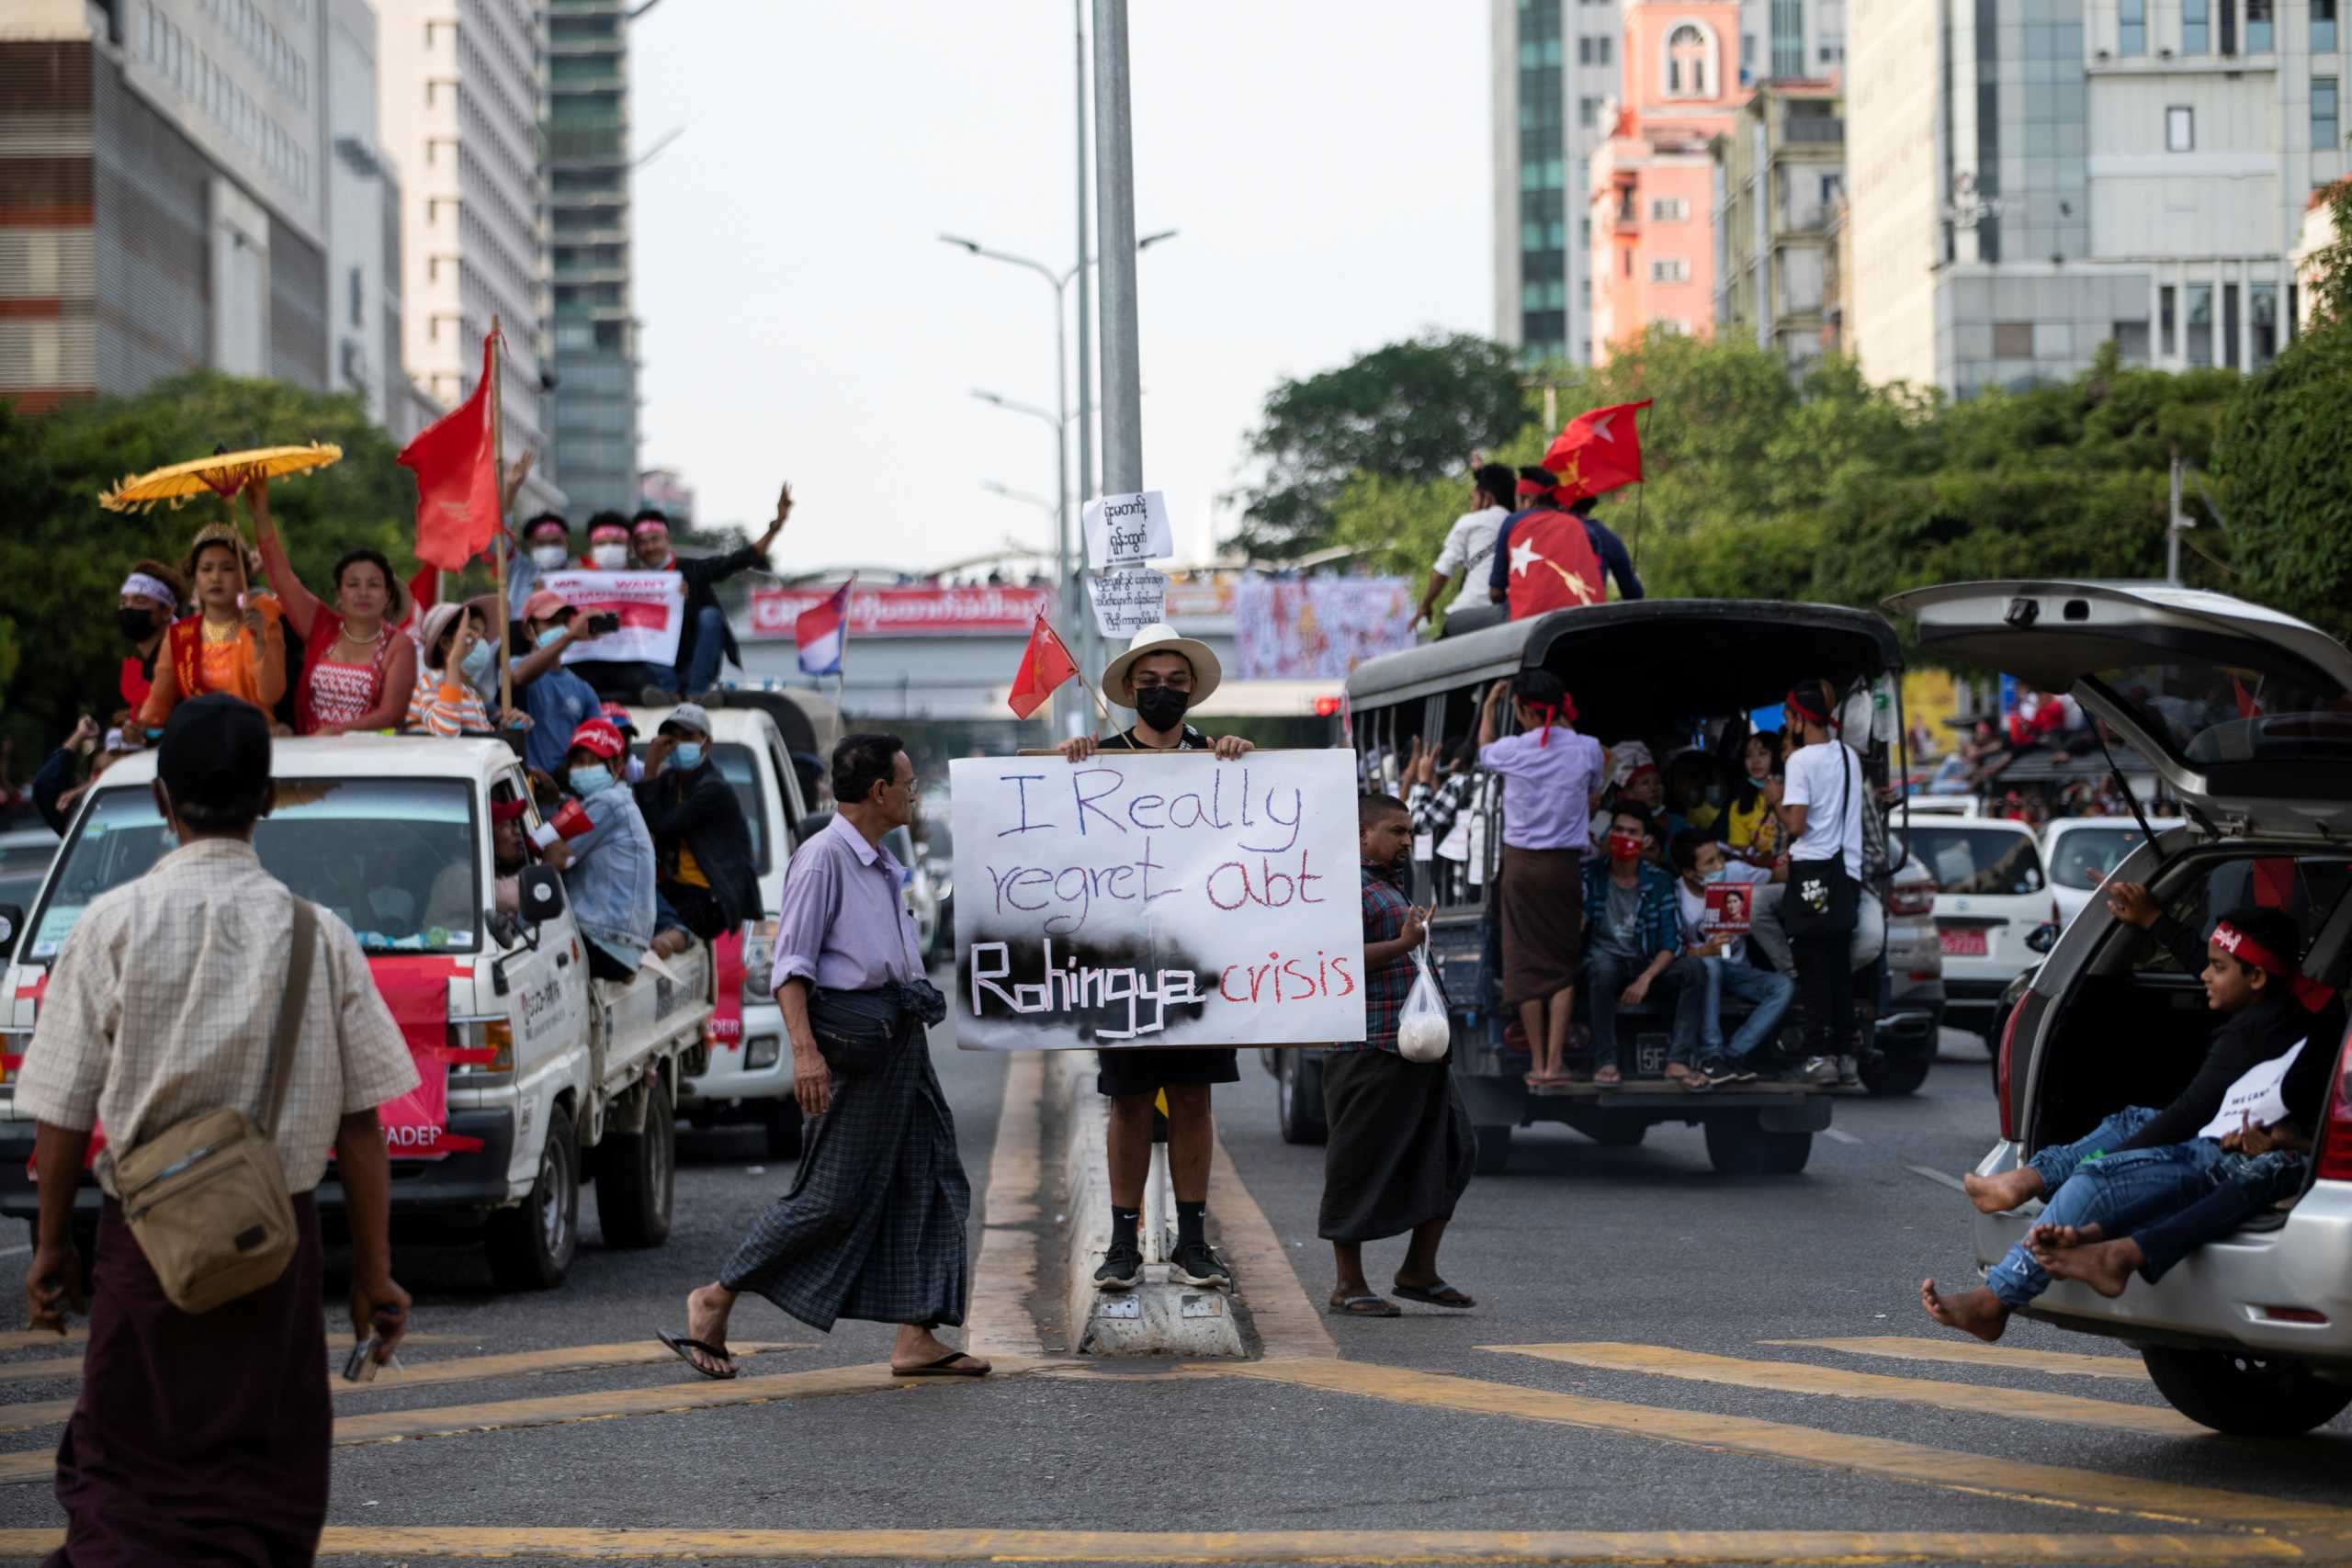 Μιανμάρ: Στους δρόμους χιλιάδες διαδηλωτές παρά τις απειλές και τις συλλήψεις από τους πραξικοπηματίες